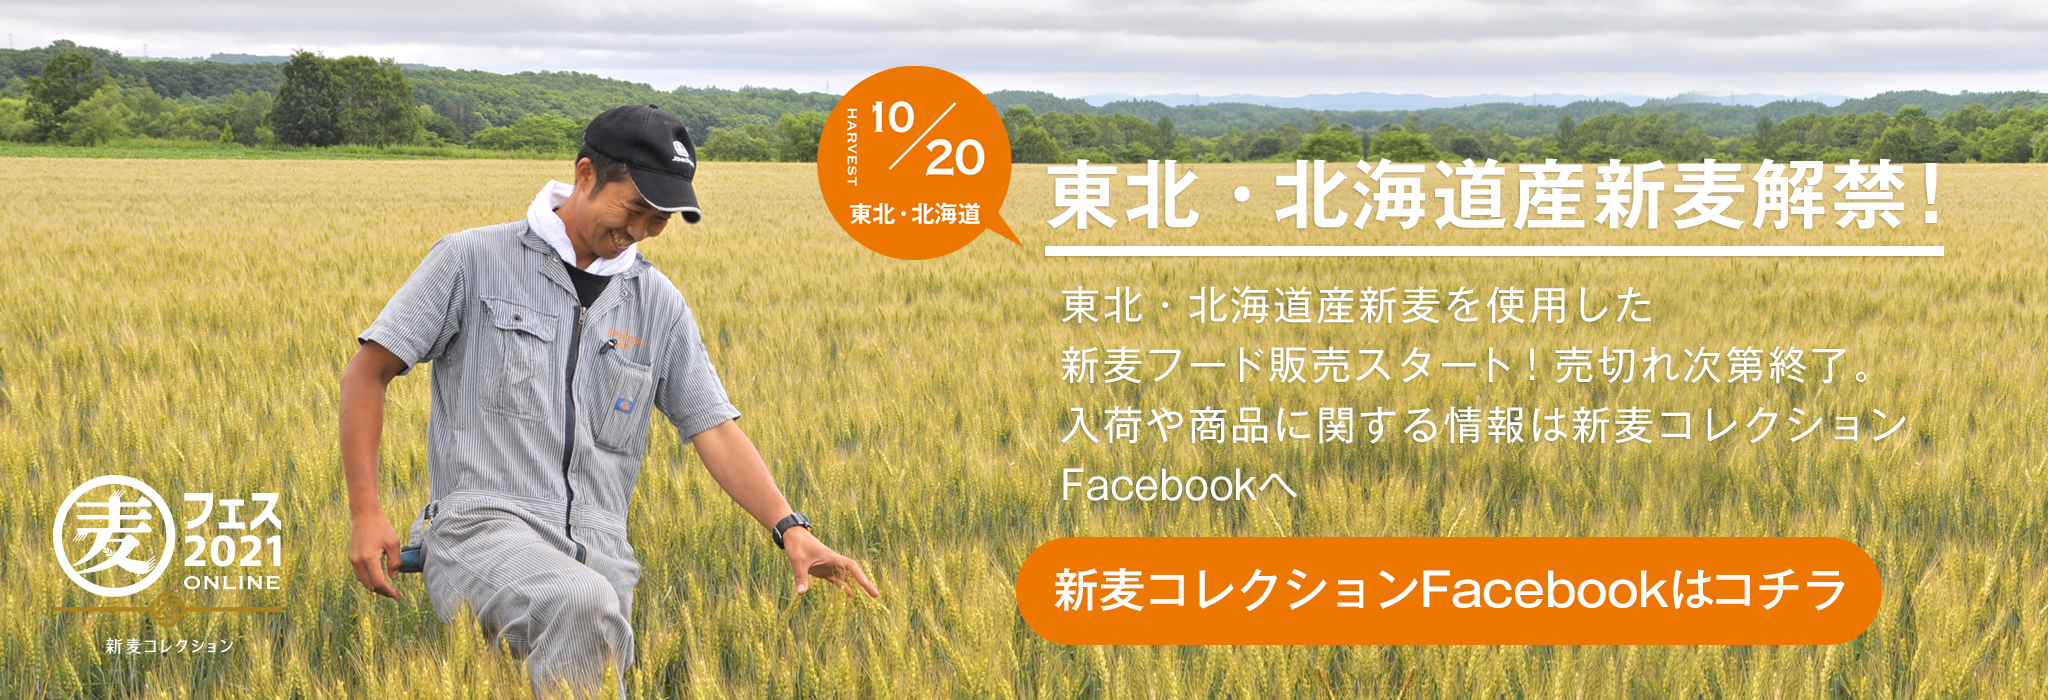 東北・北海道産新麦を使用した新麦フード販売スタート！売切れ次第終了。入荷や商品に関する情報は新麦コレクションFacebookへ